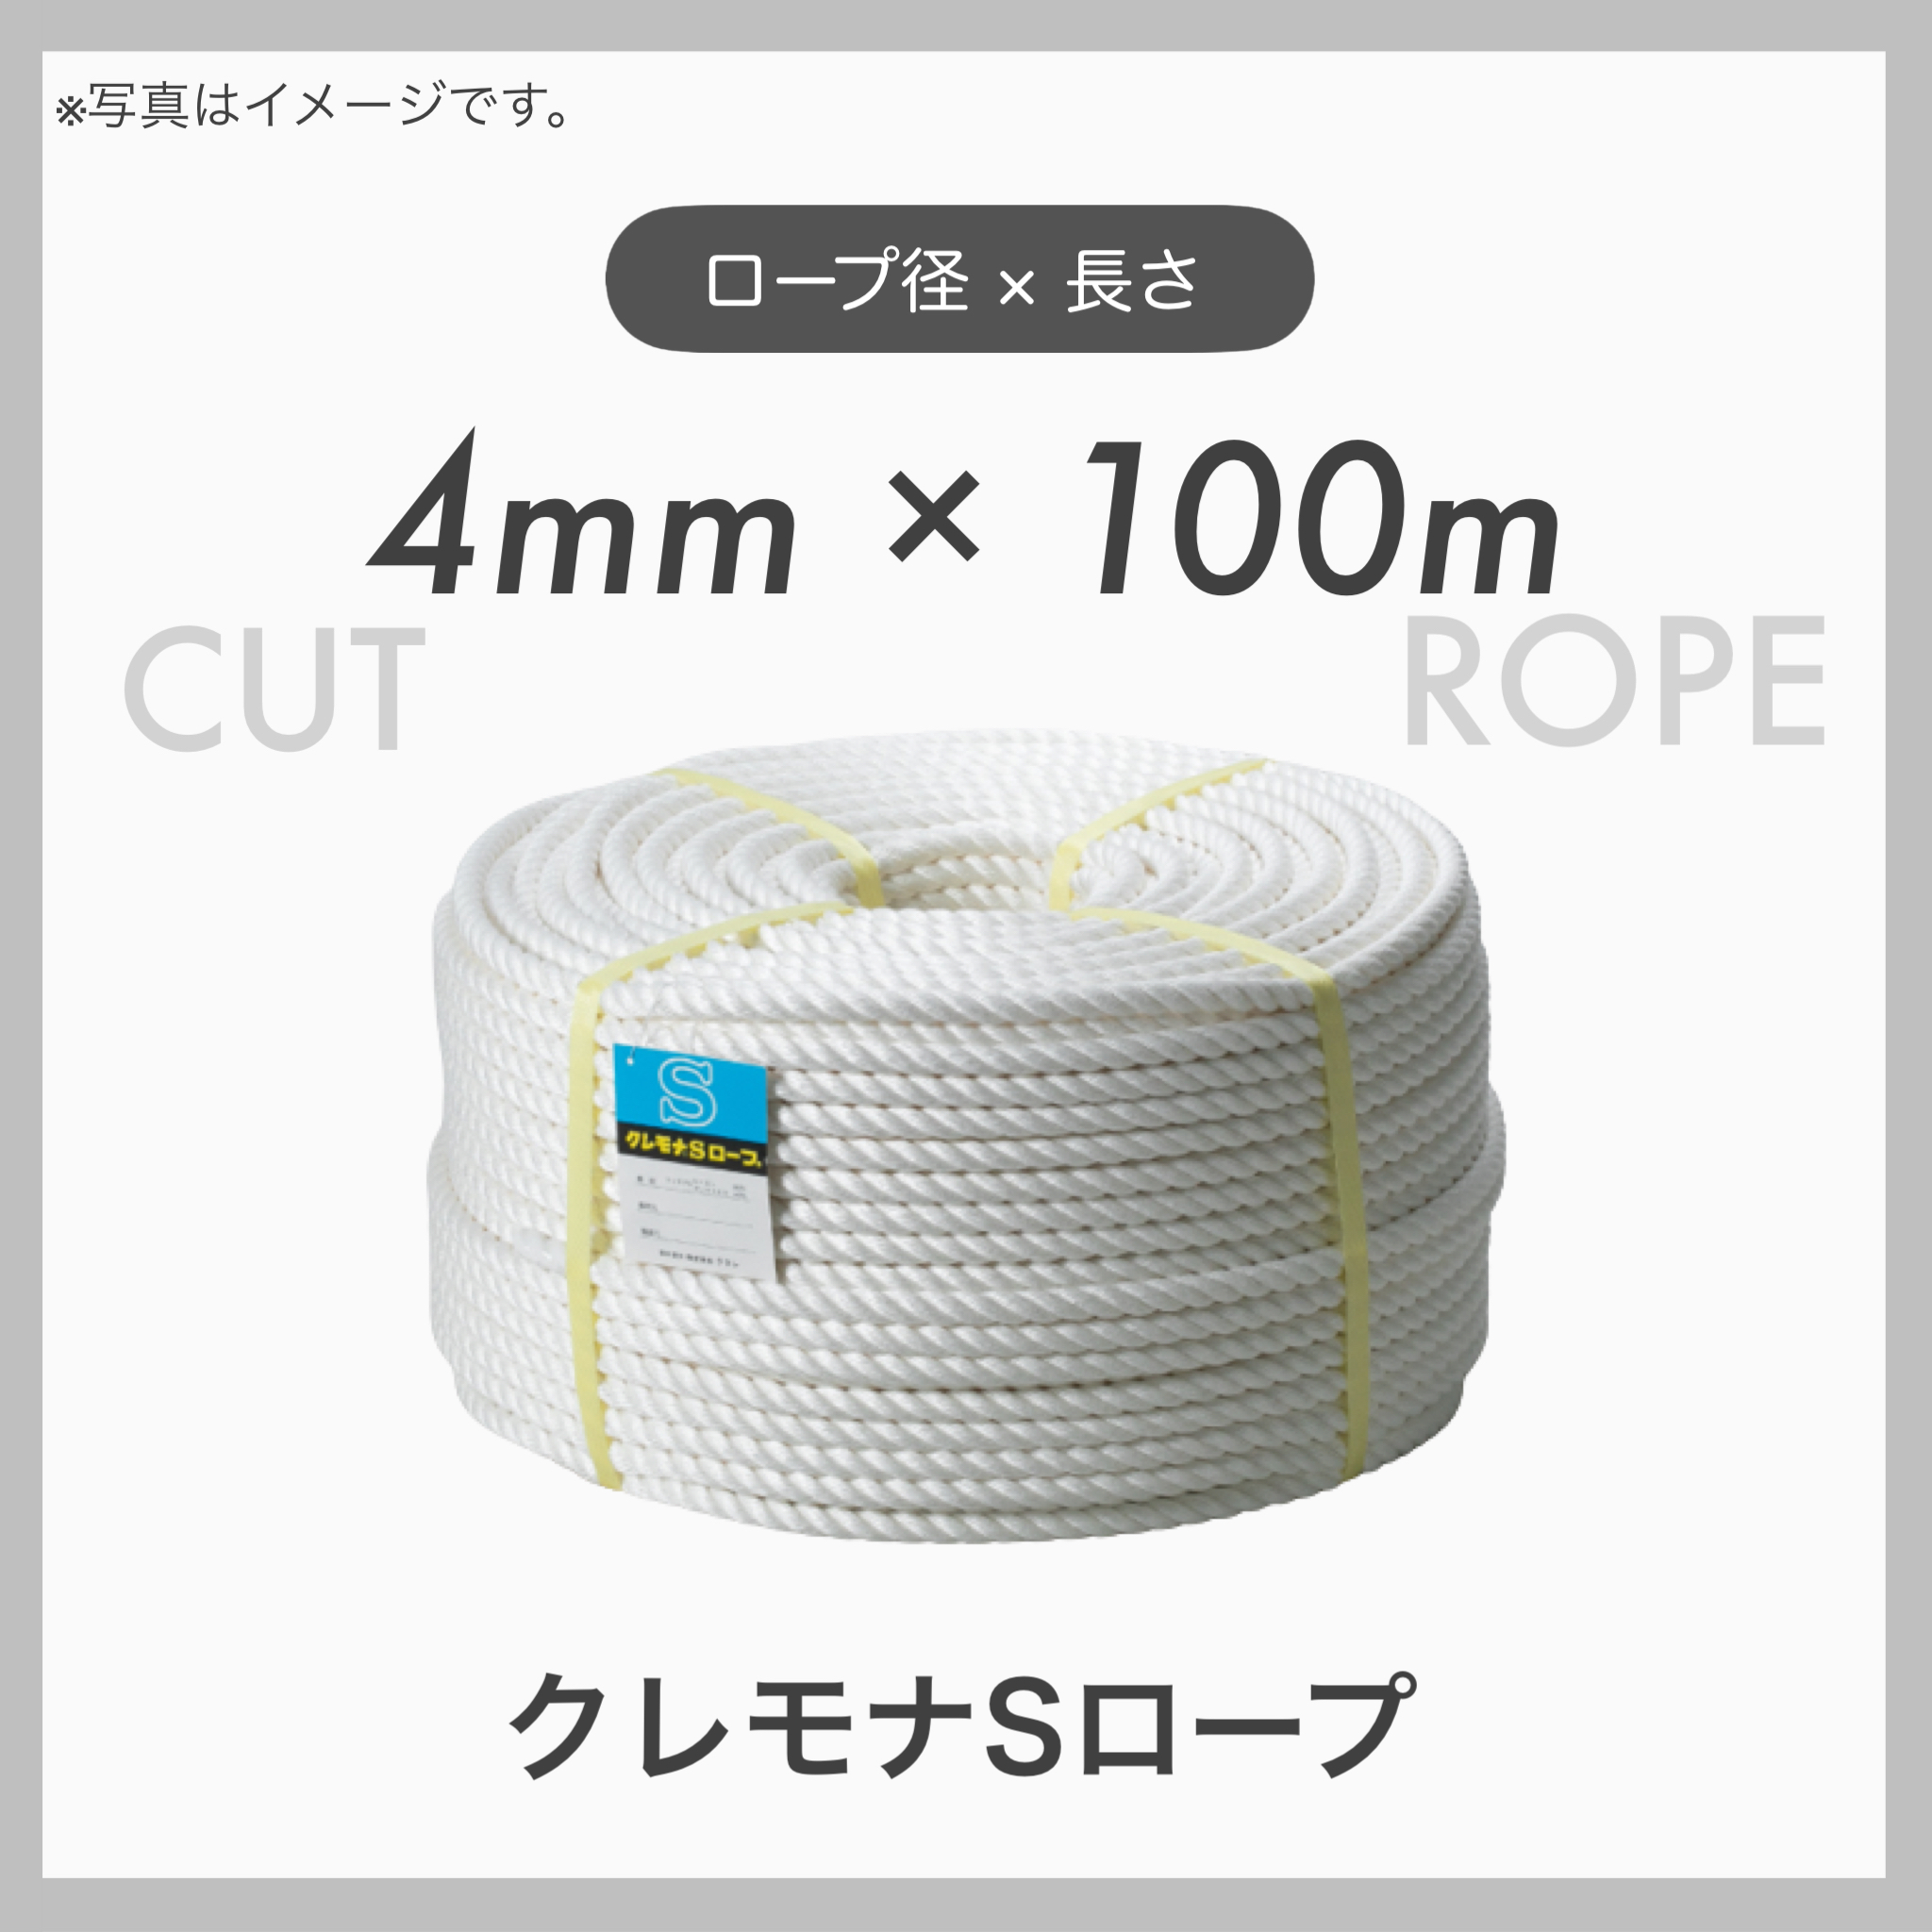  クレモナロープ クレモナSロープ 繊維ロープ 合繊ロープ 4mm×100m 直径4mm 長さ100m